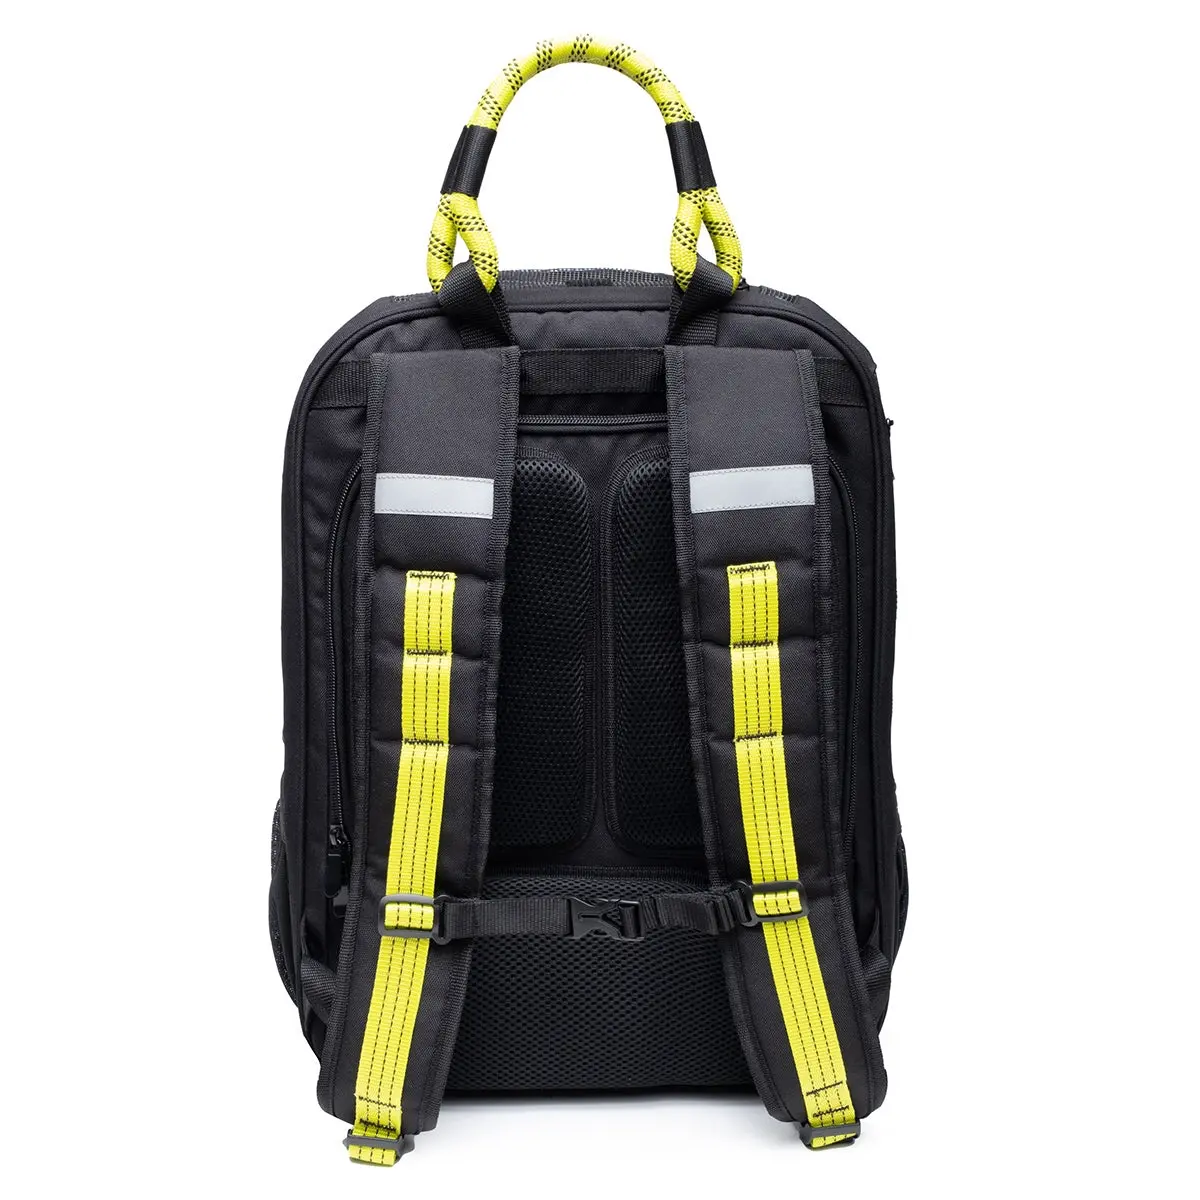 Roverlund Roverlund Backpack Black/Yellow